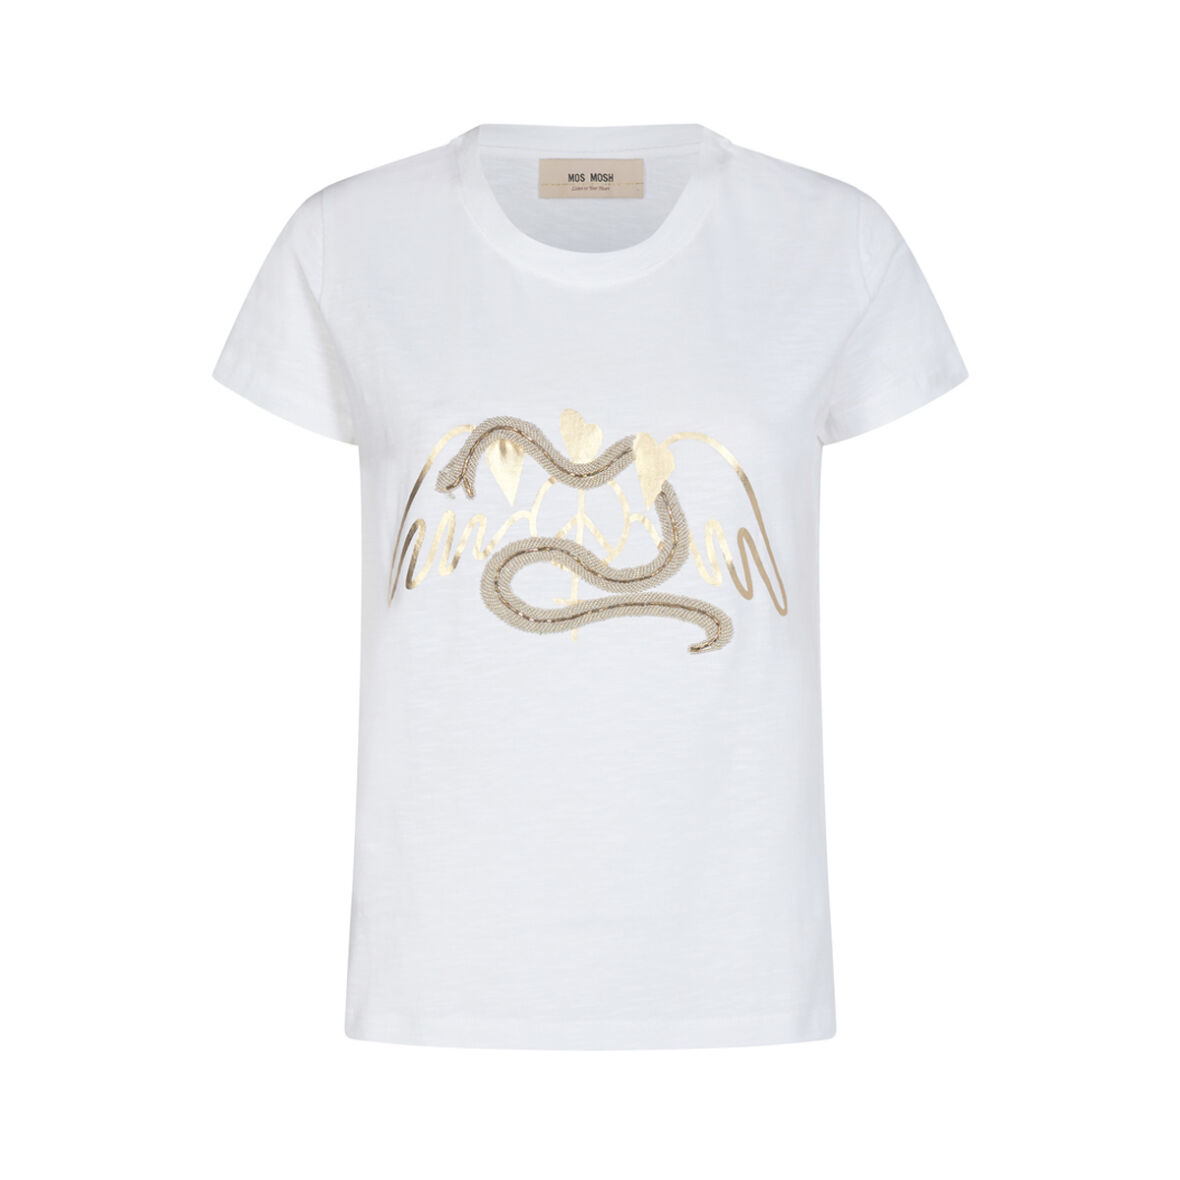 MOSH - Vee T-shirt White 136320 - Fri Fragt Over 499,